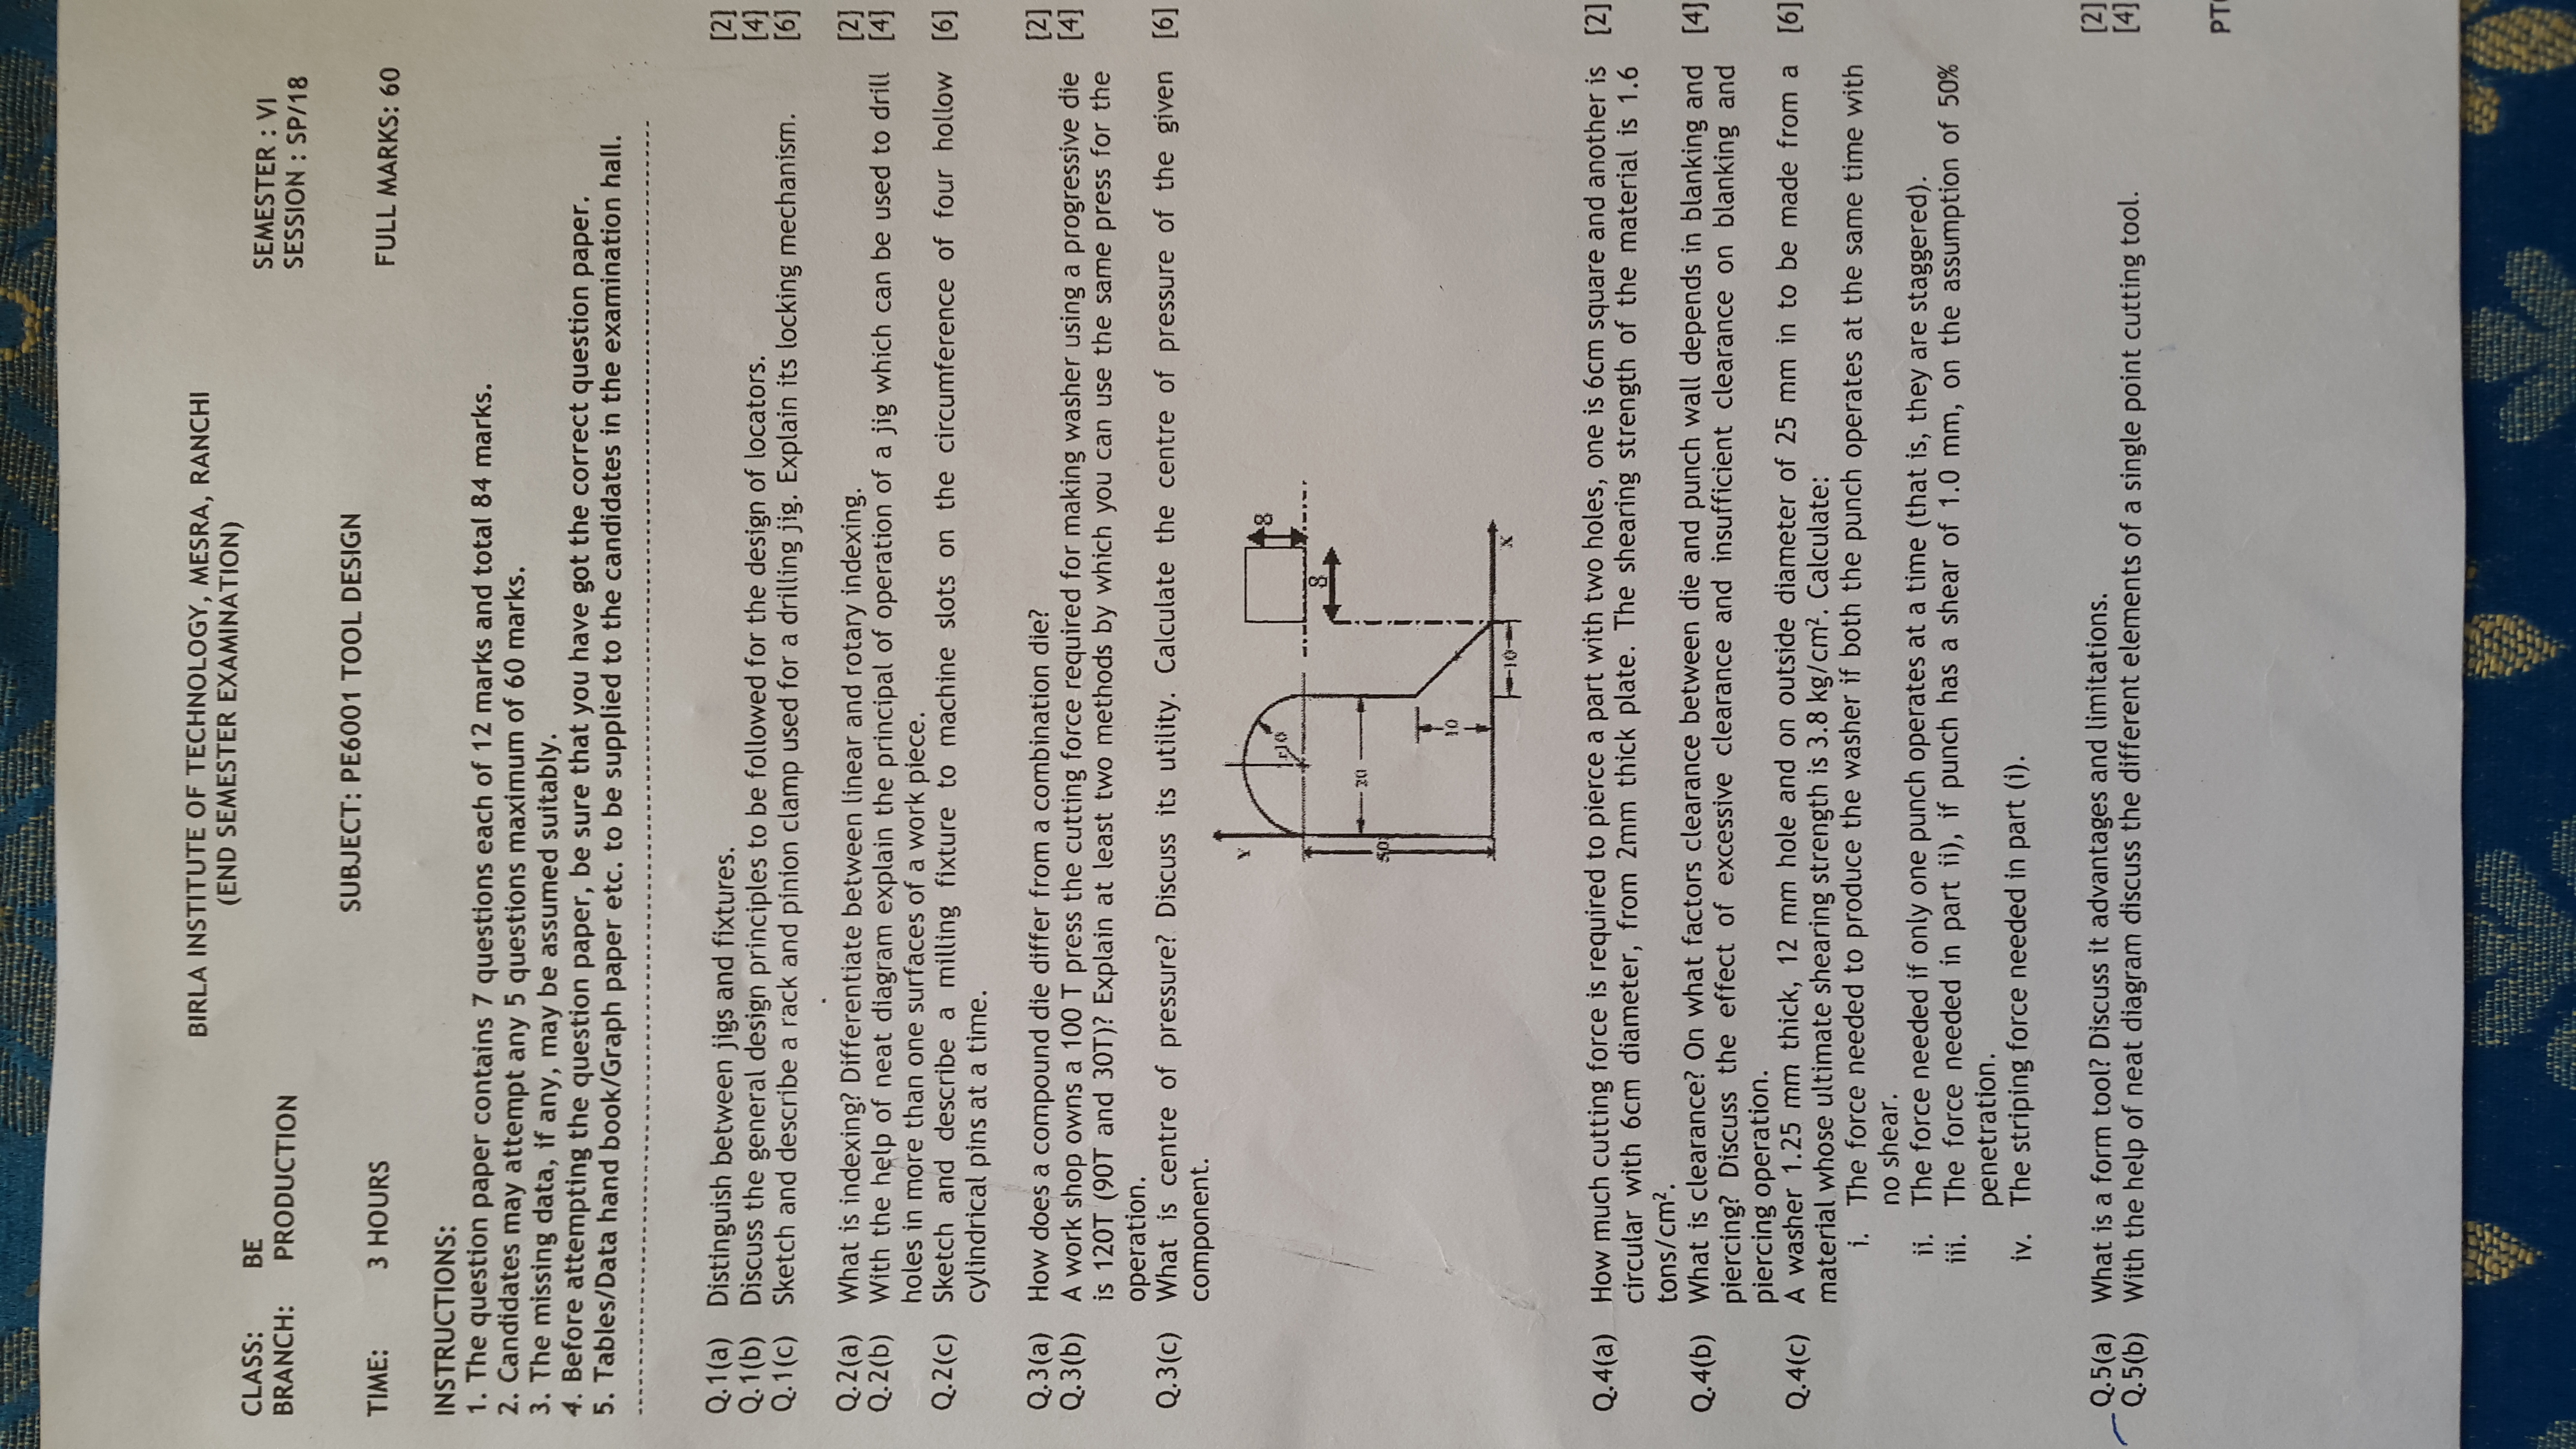 Tool Design Question Paper-2484_jSTpWY.jpg